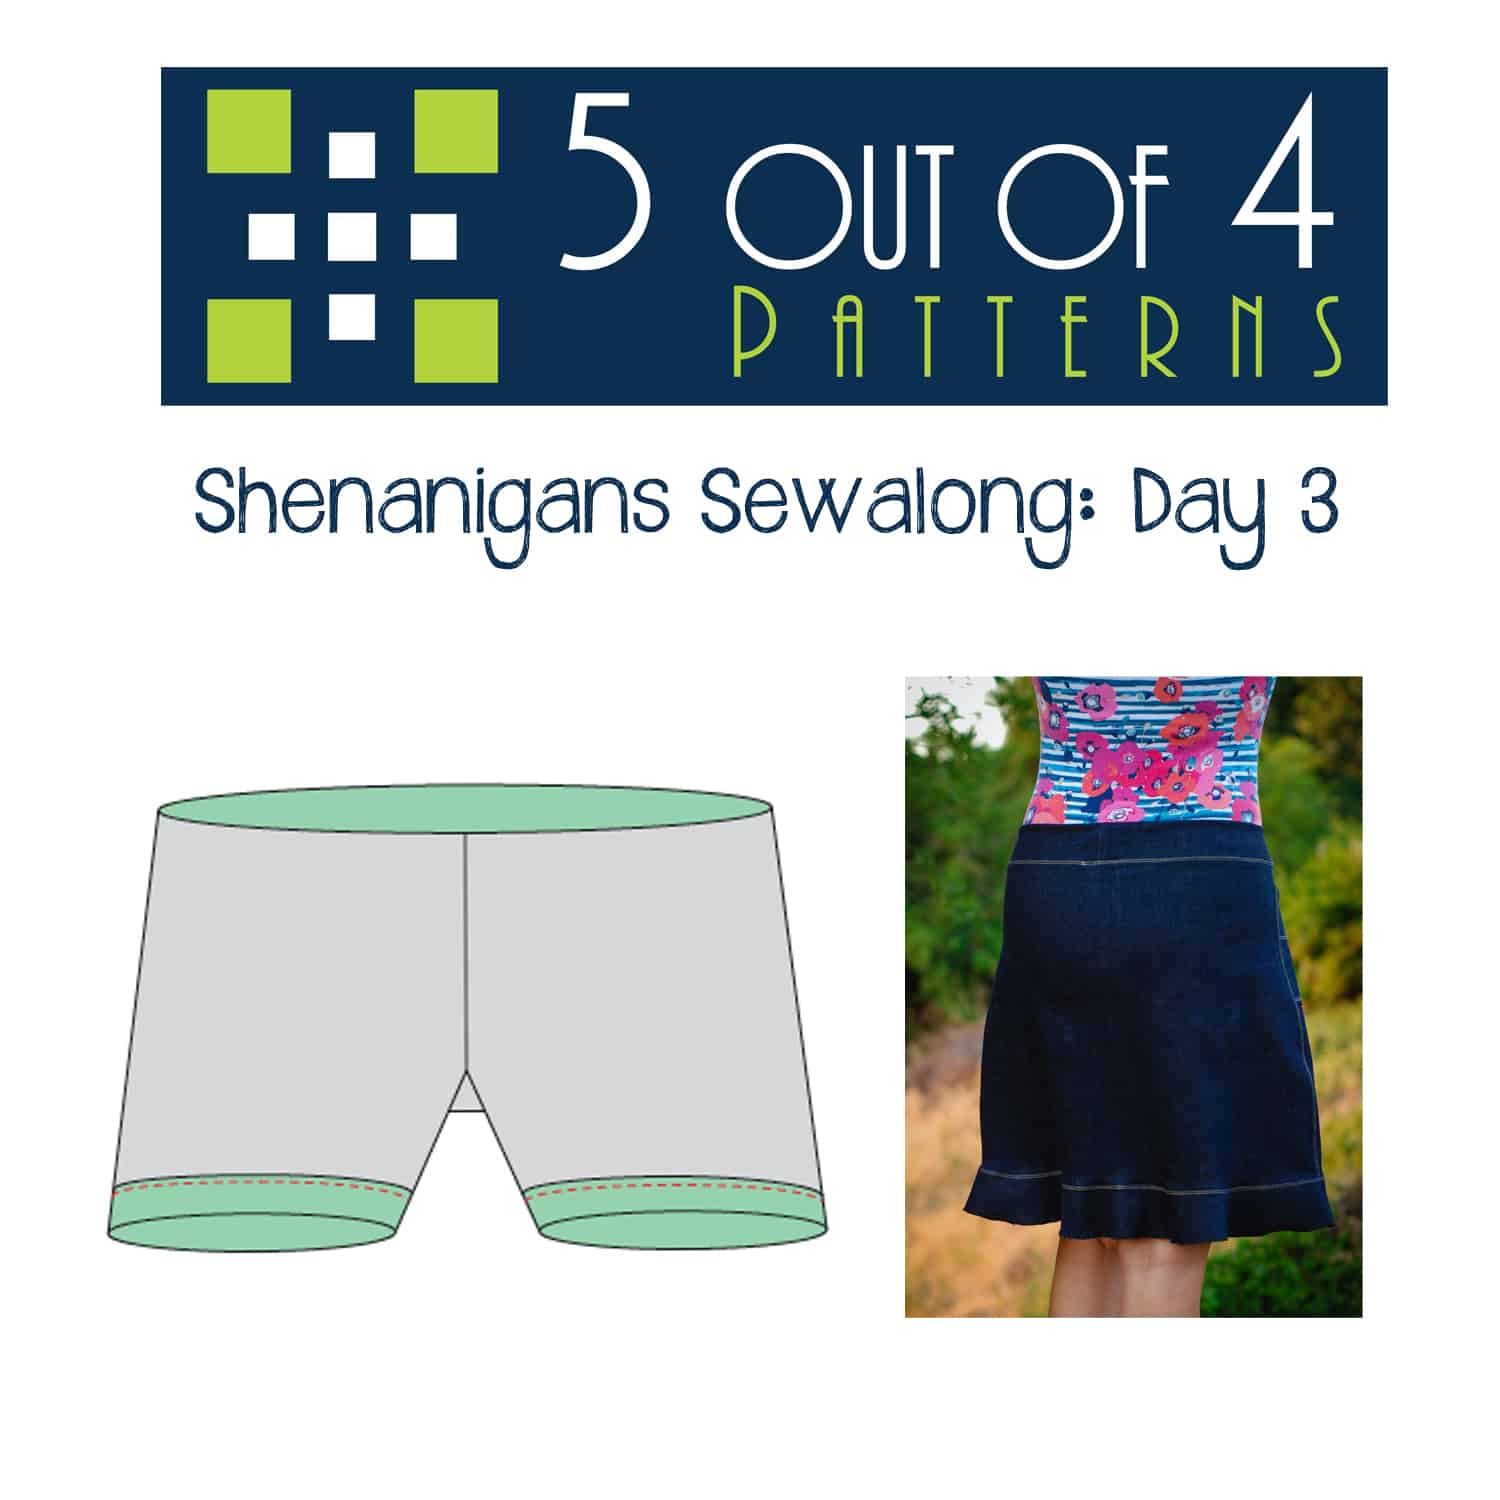 Shenanigans Sewalong: Day 3 - 5 out of 4 Patterns